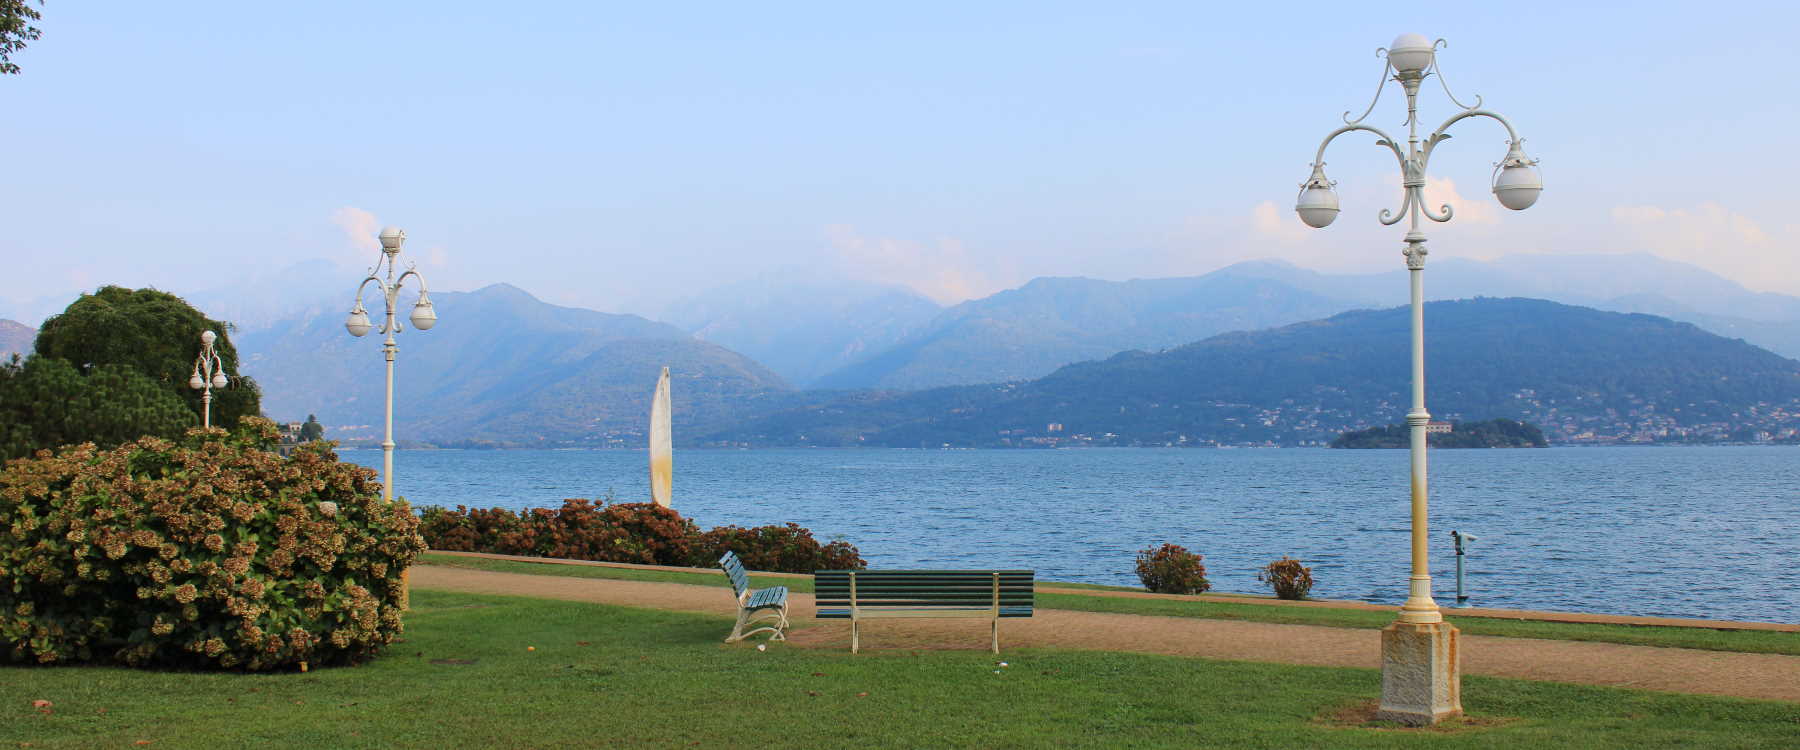 Imagen de vista previa de la fotografía del lago Maggiore 2022 de Gabriele Romano